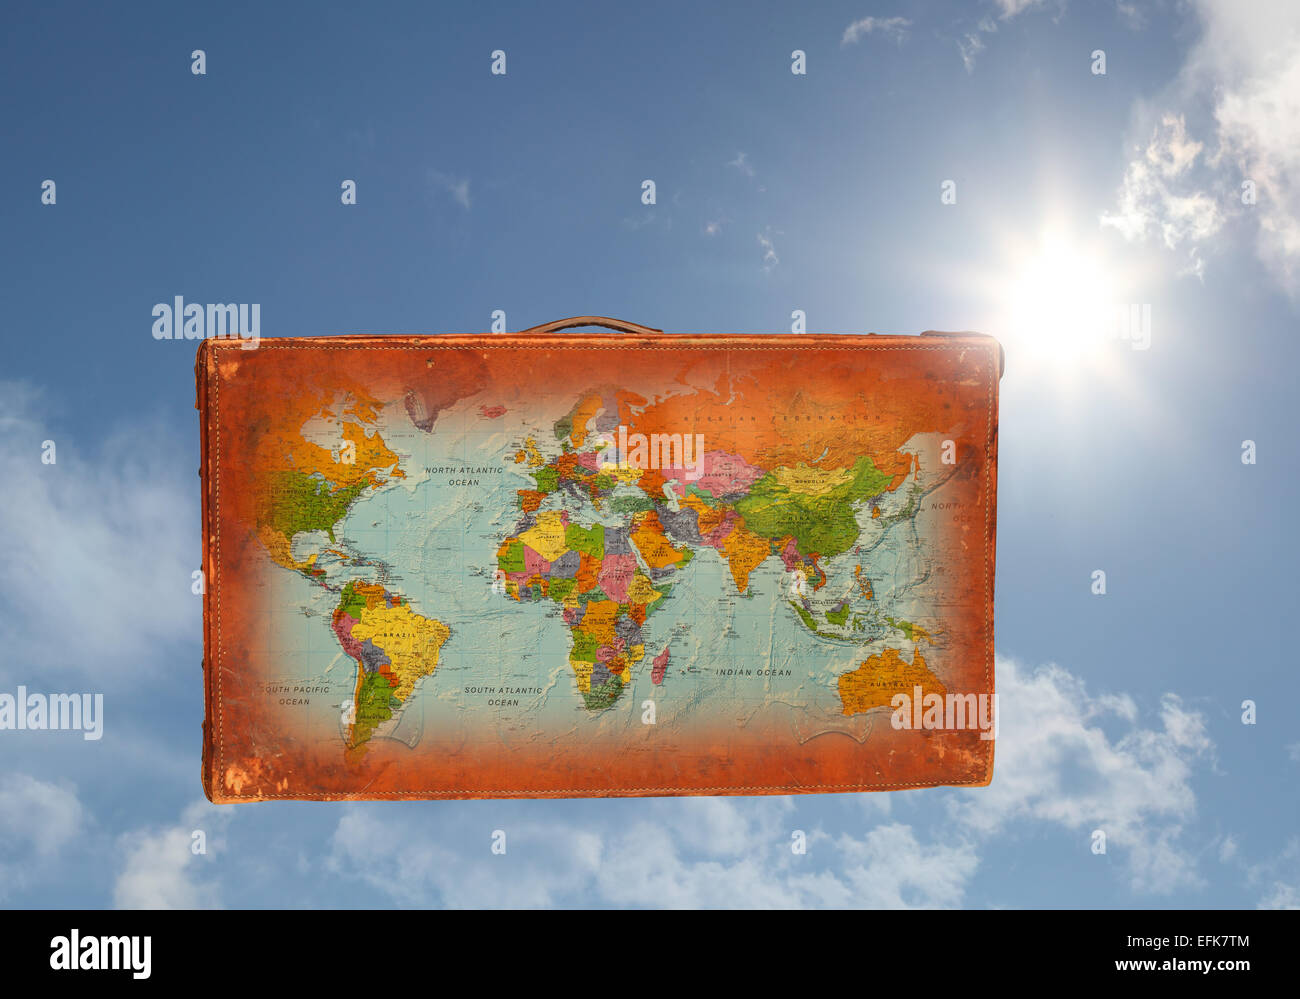 Une vieille valise en cuir avec une carte du monde superposées, indiqué contre un ciel bleu ensoleillé Banque D'Images